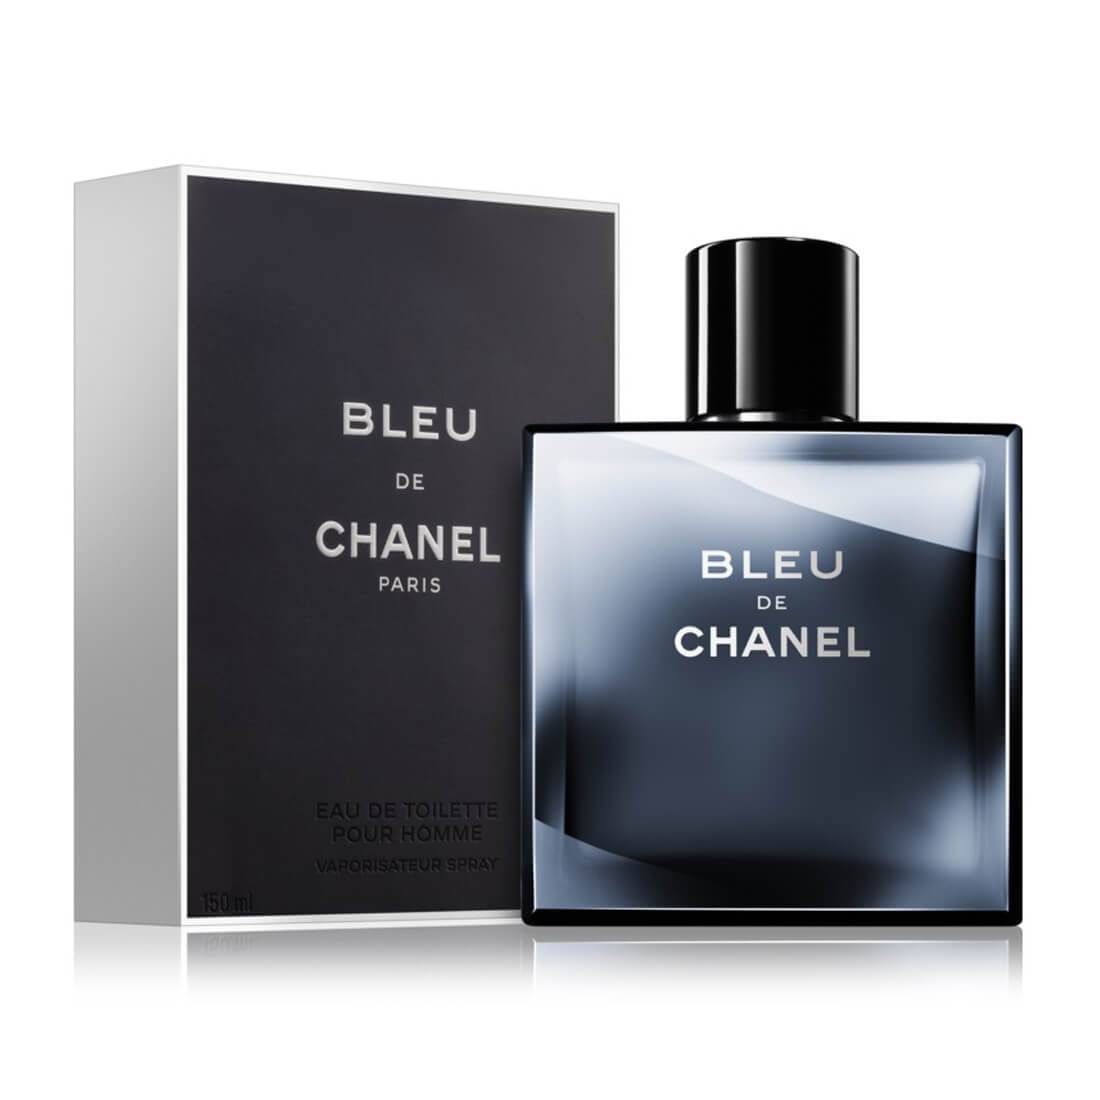 Chanel Bleu EDT 150ml - Masculine Fragrance For Men, D'Scentsation